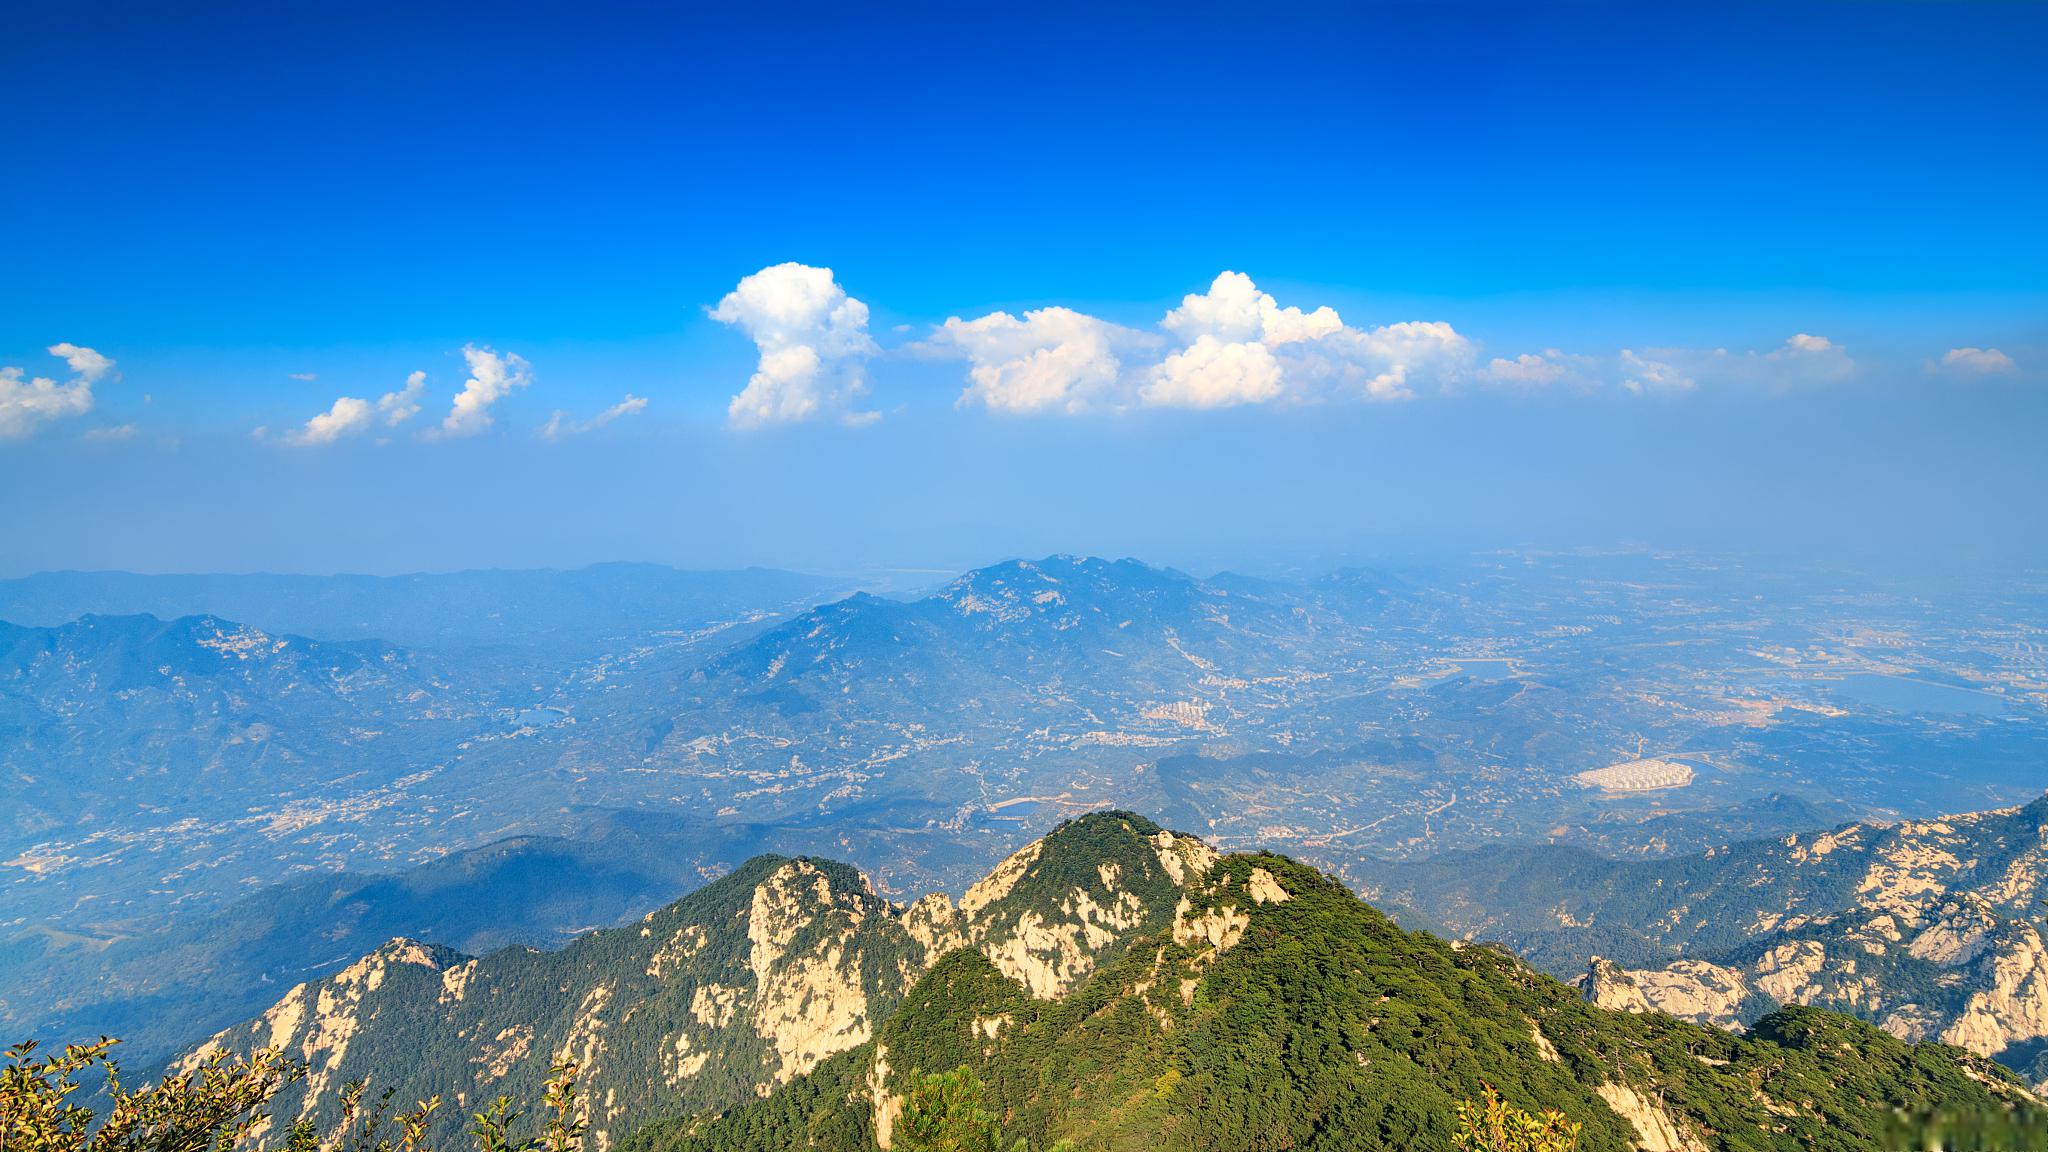 攀登泰山攻略 泰山,位于中国山东省泰安市,是五岳之首,也是世界文化与